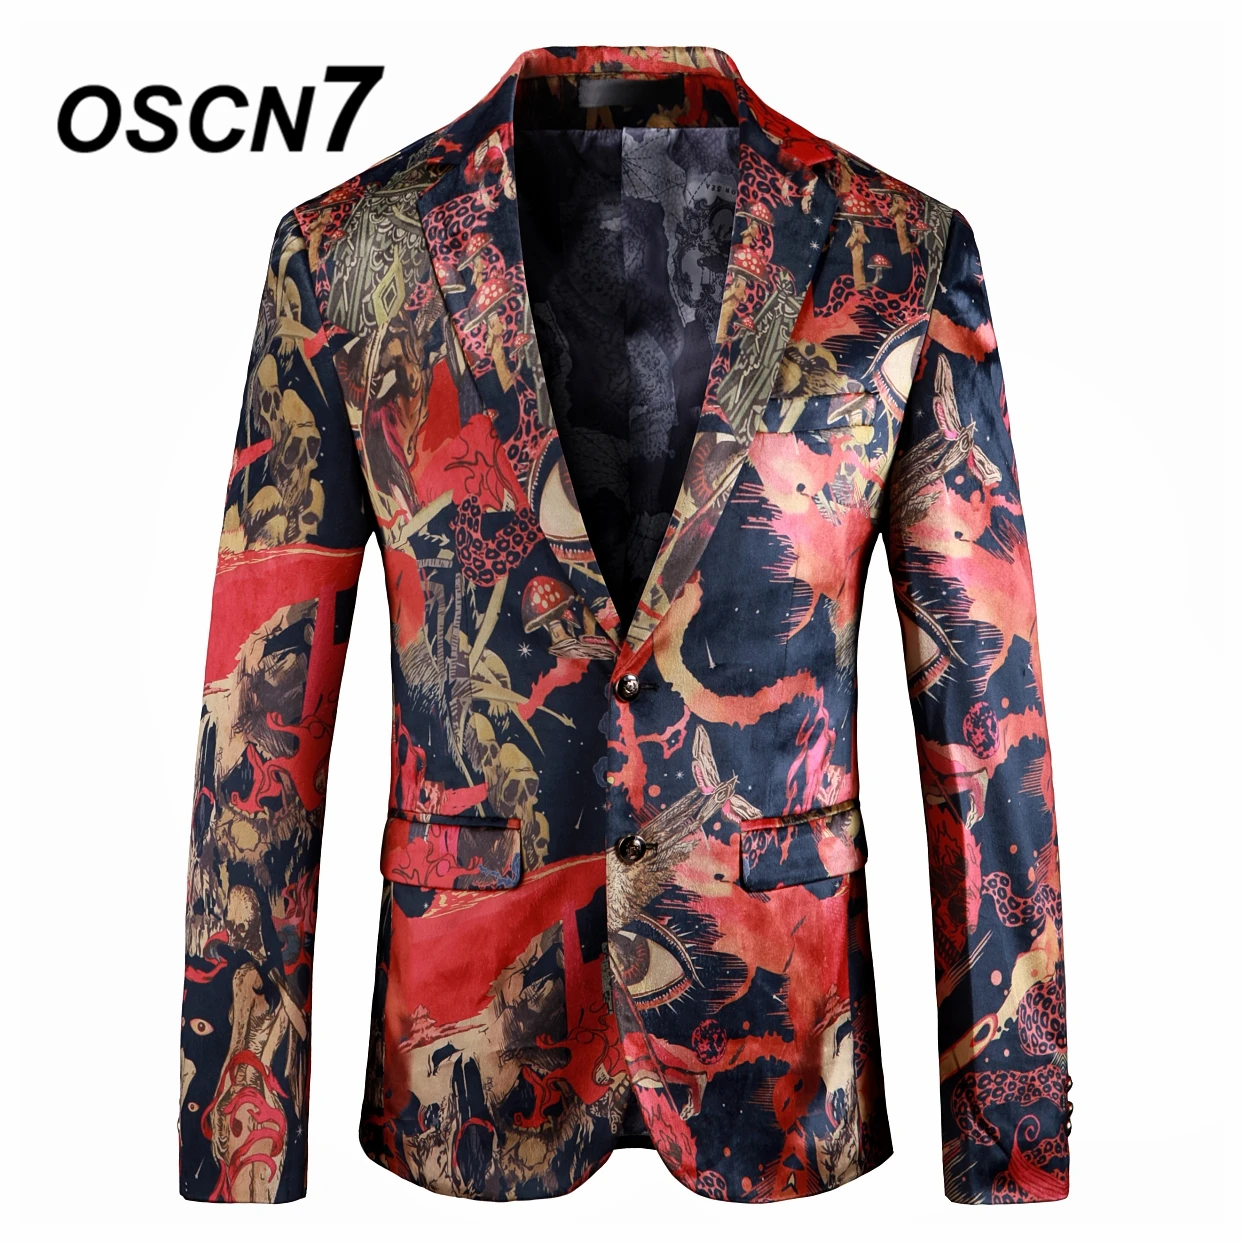 OSCN7 свободное, облегающее бренд графика Принт блейзер для мужчин 2019 Жених Свадебный Для модные вечерние пиджак 912